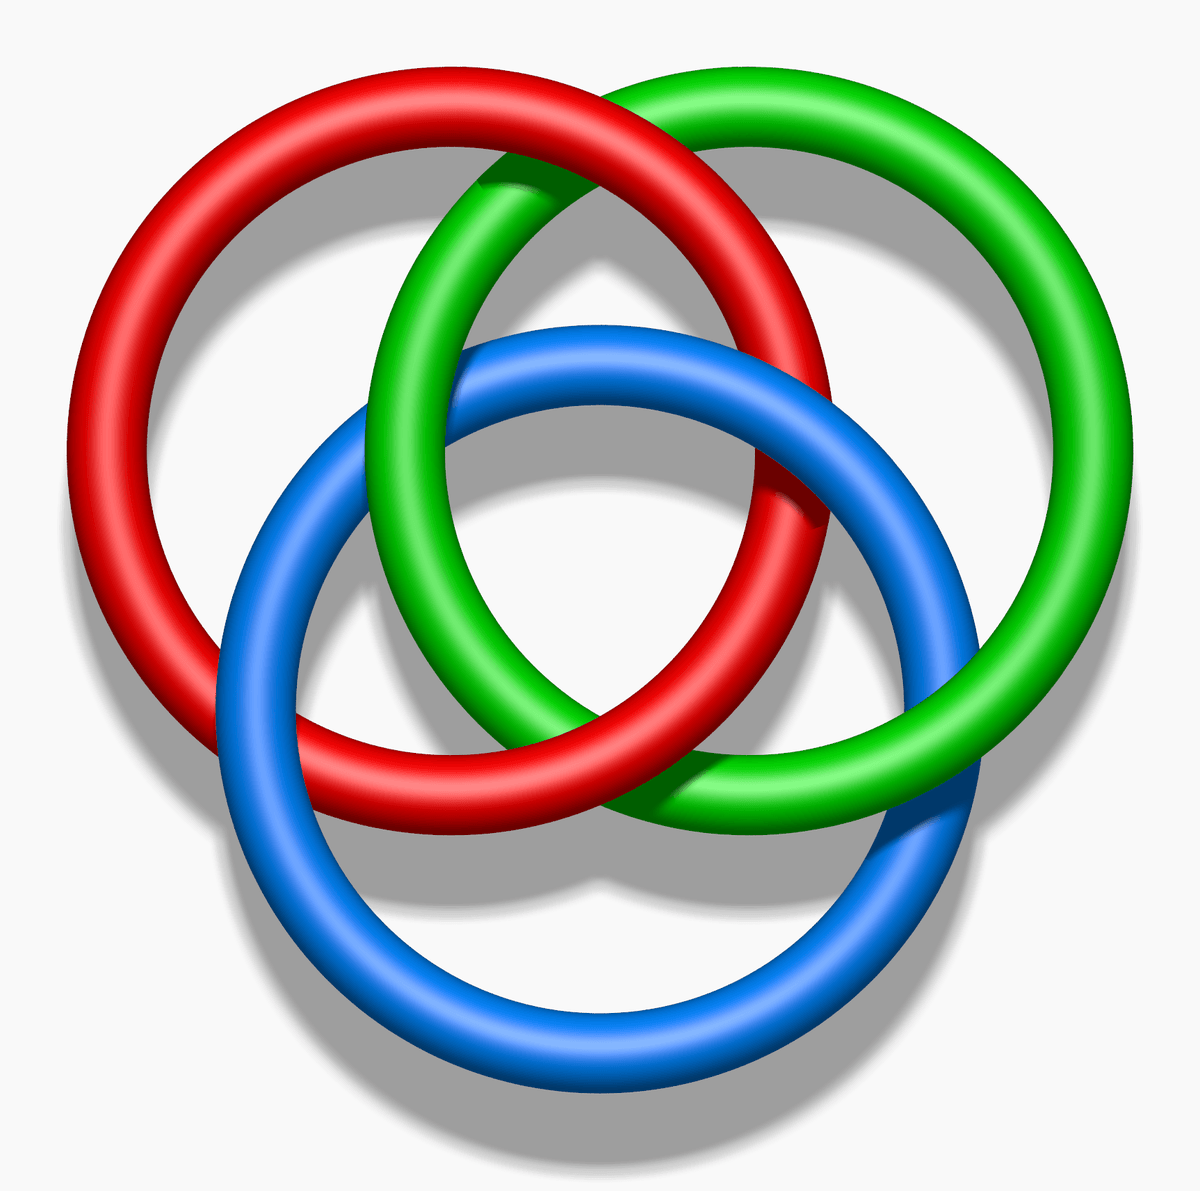 3 Rings Logo - Borromean rings